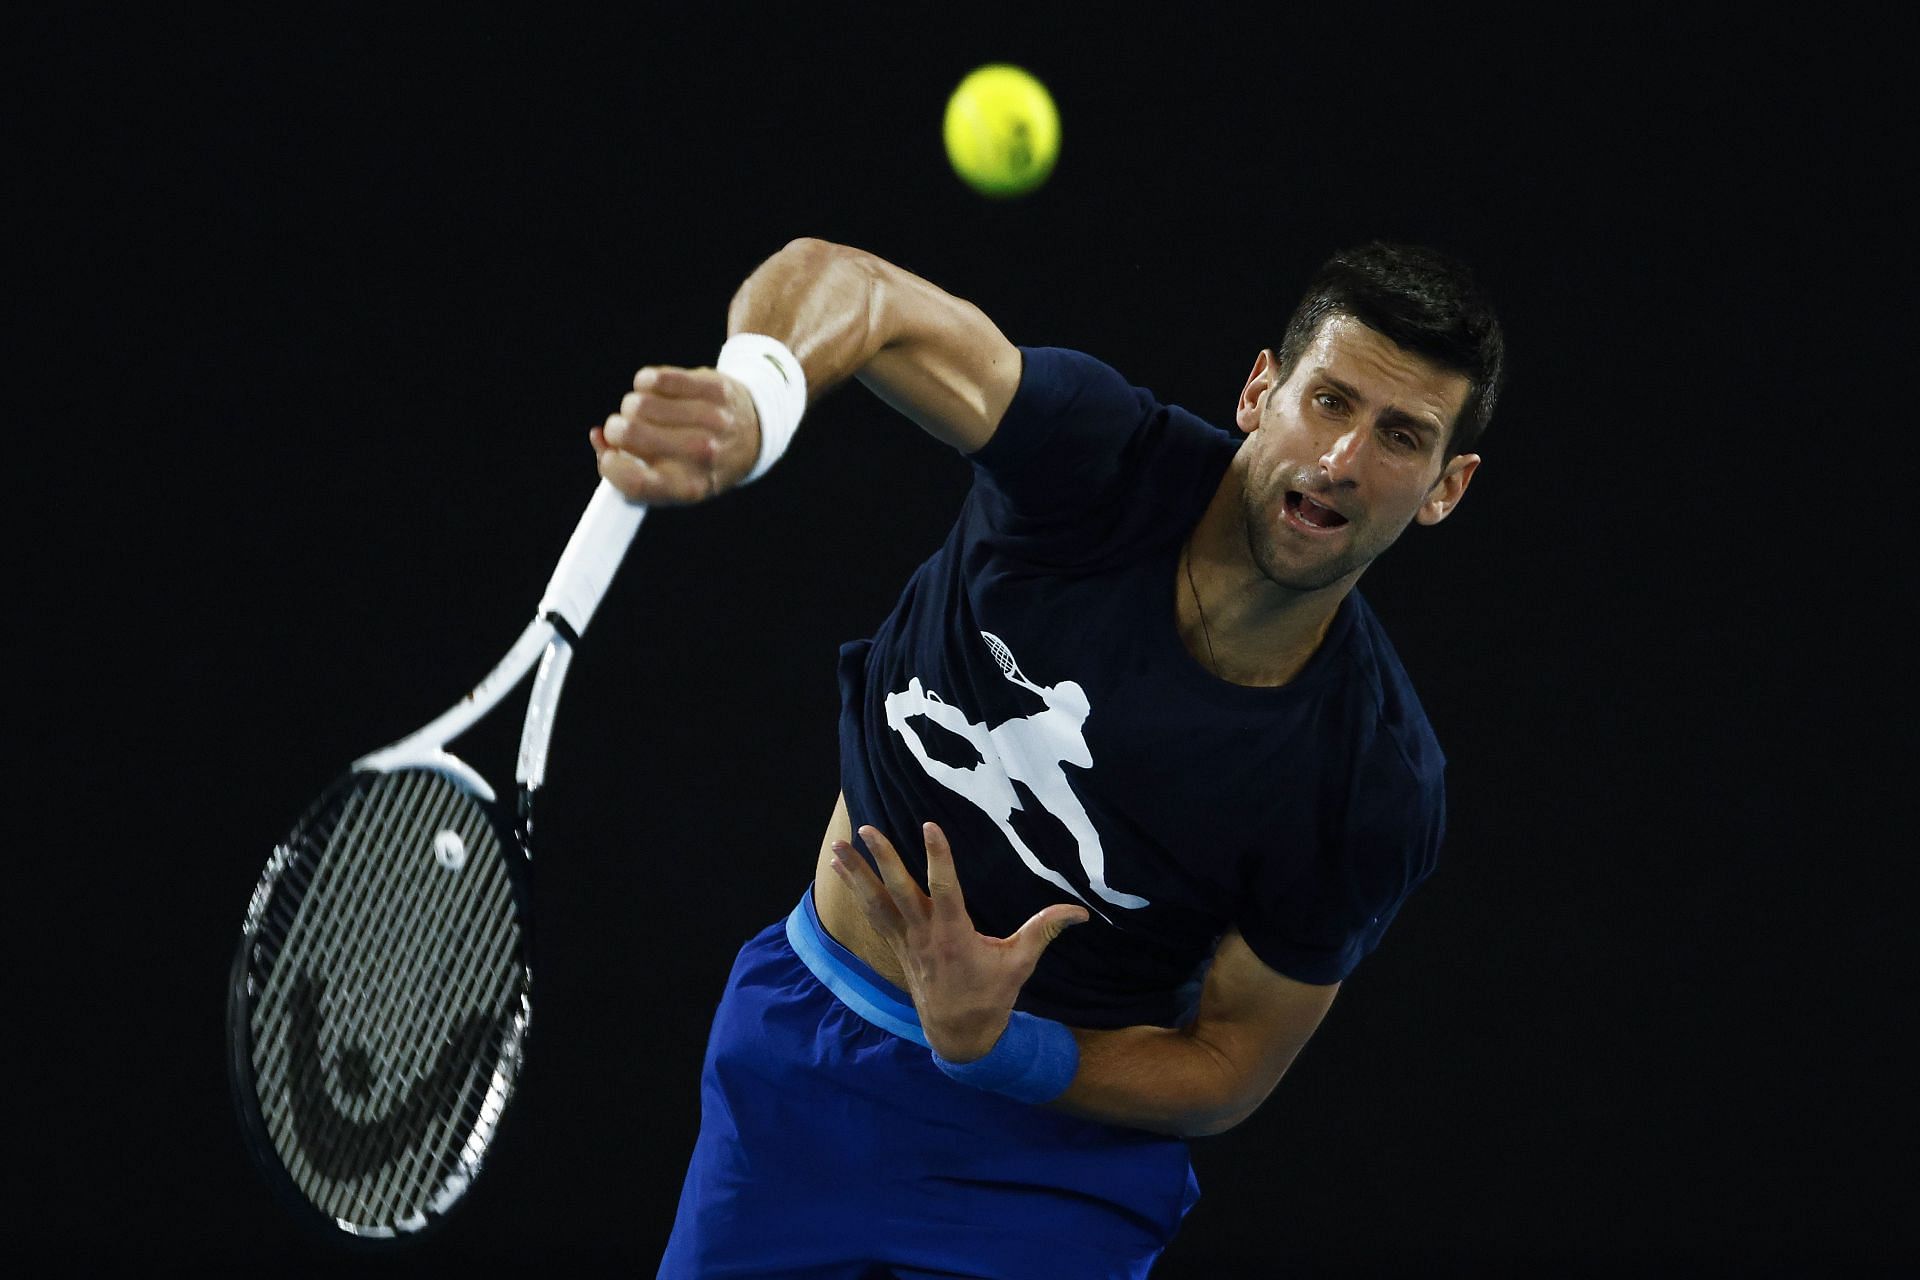 Novak Djokovic in a practice session ahead of 2022 Australian Open